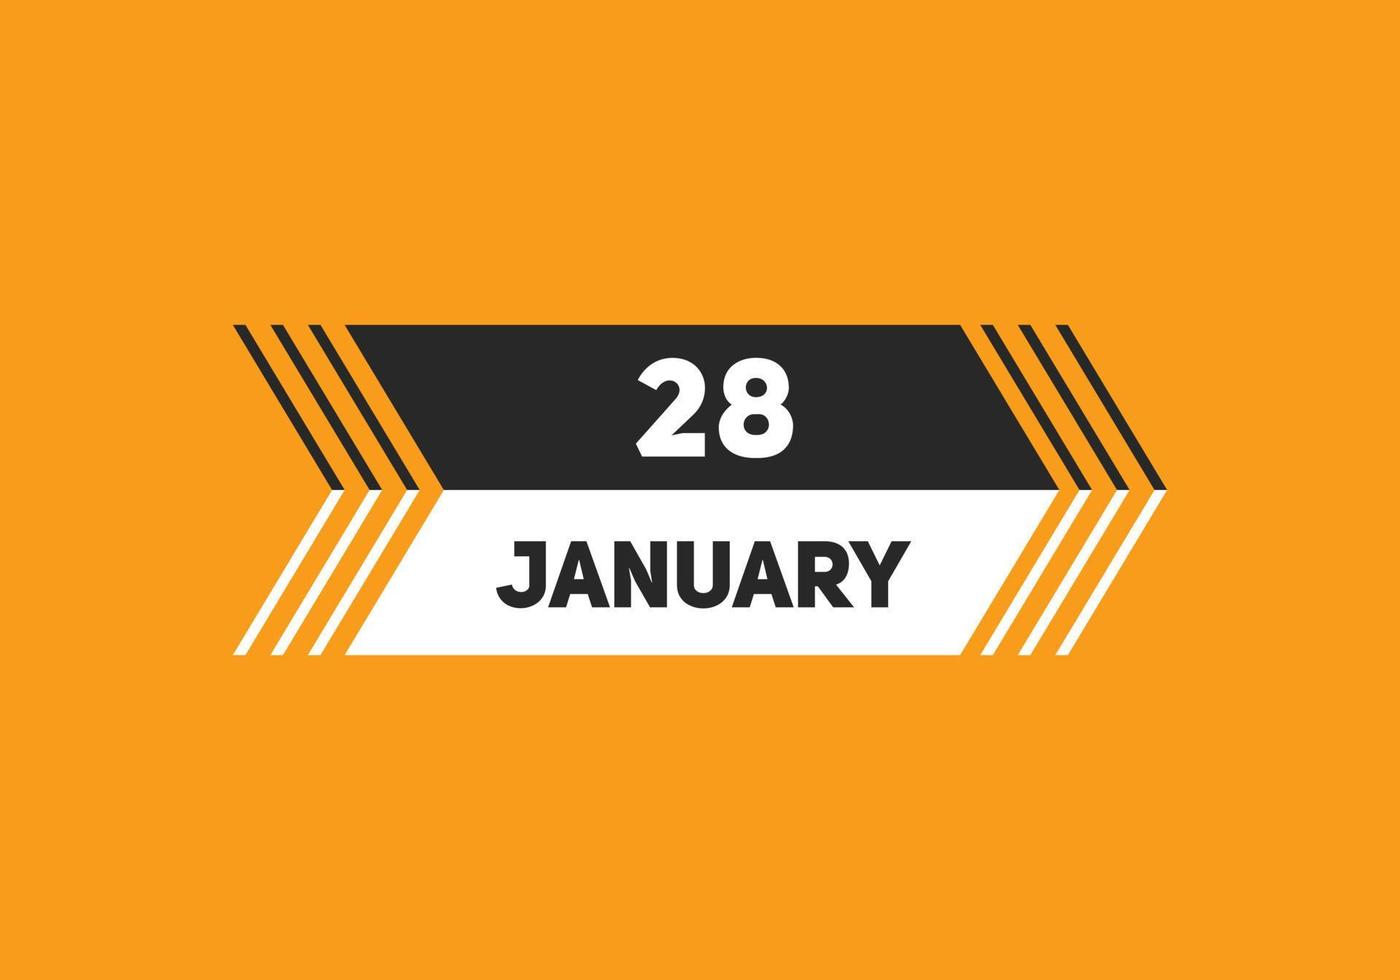 28. januar kalender erinnerung. 28. januar tägliche kalendersymbolvorlage. Kalender 28. Januar Icon-Design-Vorlage. Vektor-Illustration vektor